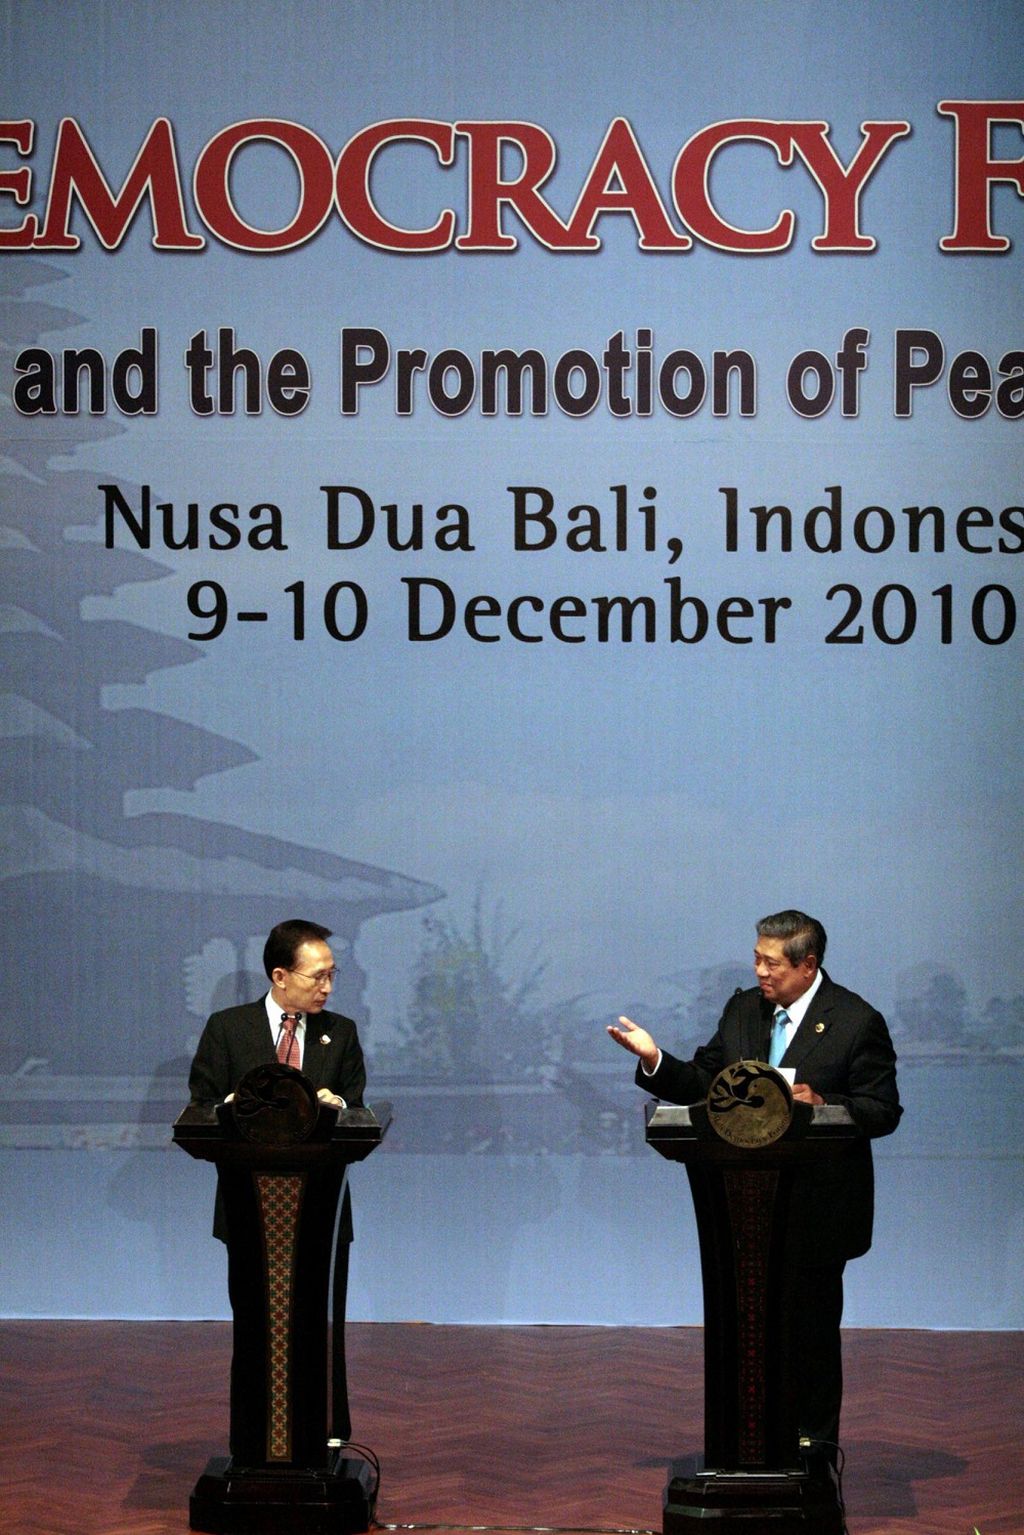 Presiden Susilo Bambang Yudhoyono dan Presiden Korea Selatan Lee Myung-bak mengeluarkan pernyataan bersama di sela-sela Bali Democracy Forum III di Nusa Dua, Bali, Kamis (9/12/2010). Di forum itu, kedua negara bertindak sebagai ketua bersama. Secara bilateral, kedua negara sepakat meningkatkan kerja sama di bidang ekonomi, khususnya di bidang investasi dan perdagangan.